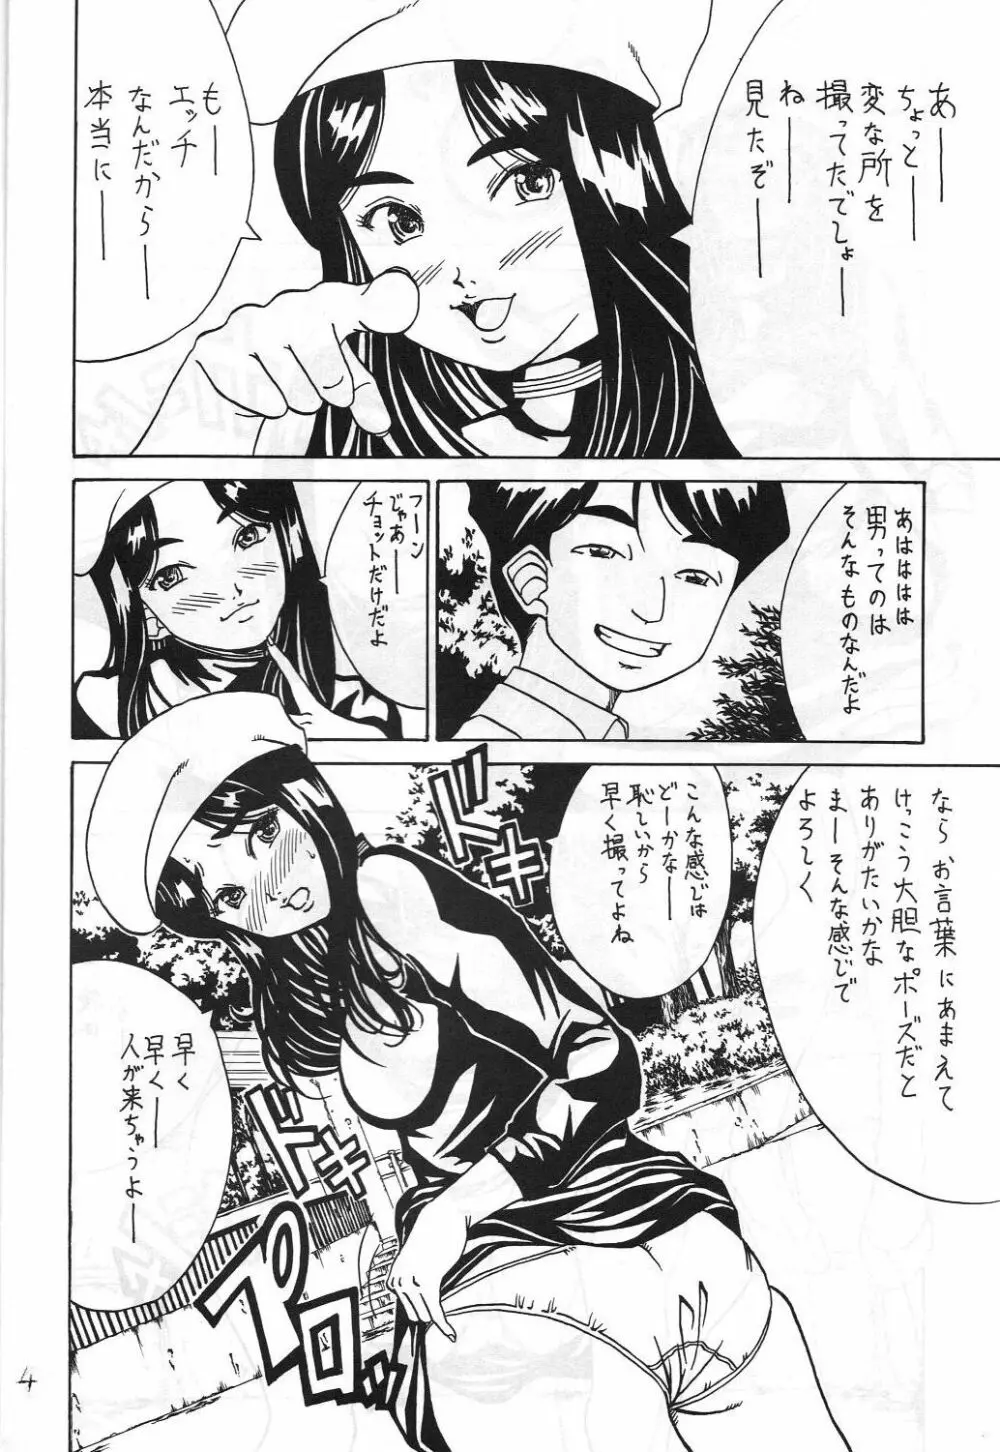 機関車は俺のジョンソン in my life (美竹) Eanakuoto (ああっ女神さまっ) - page5